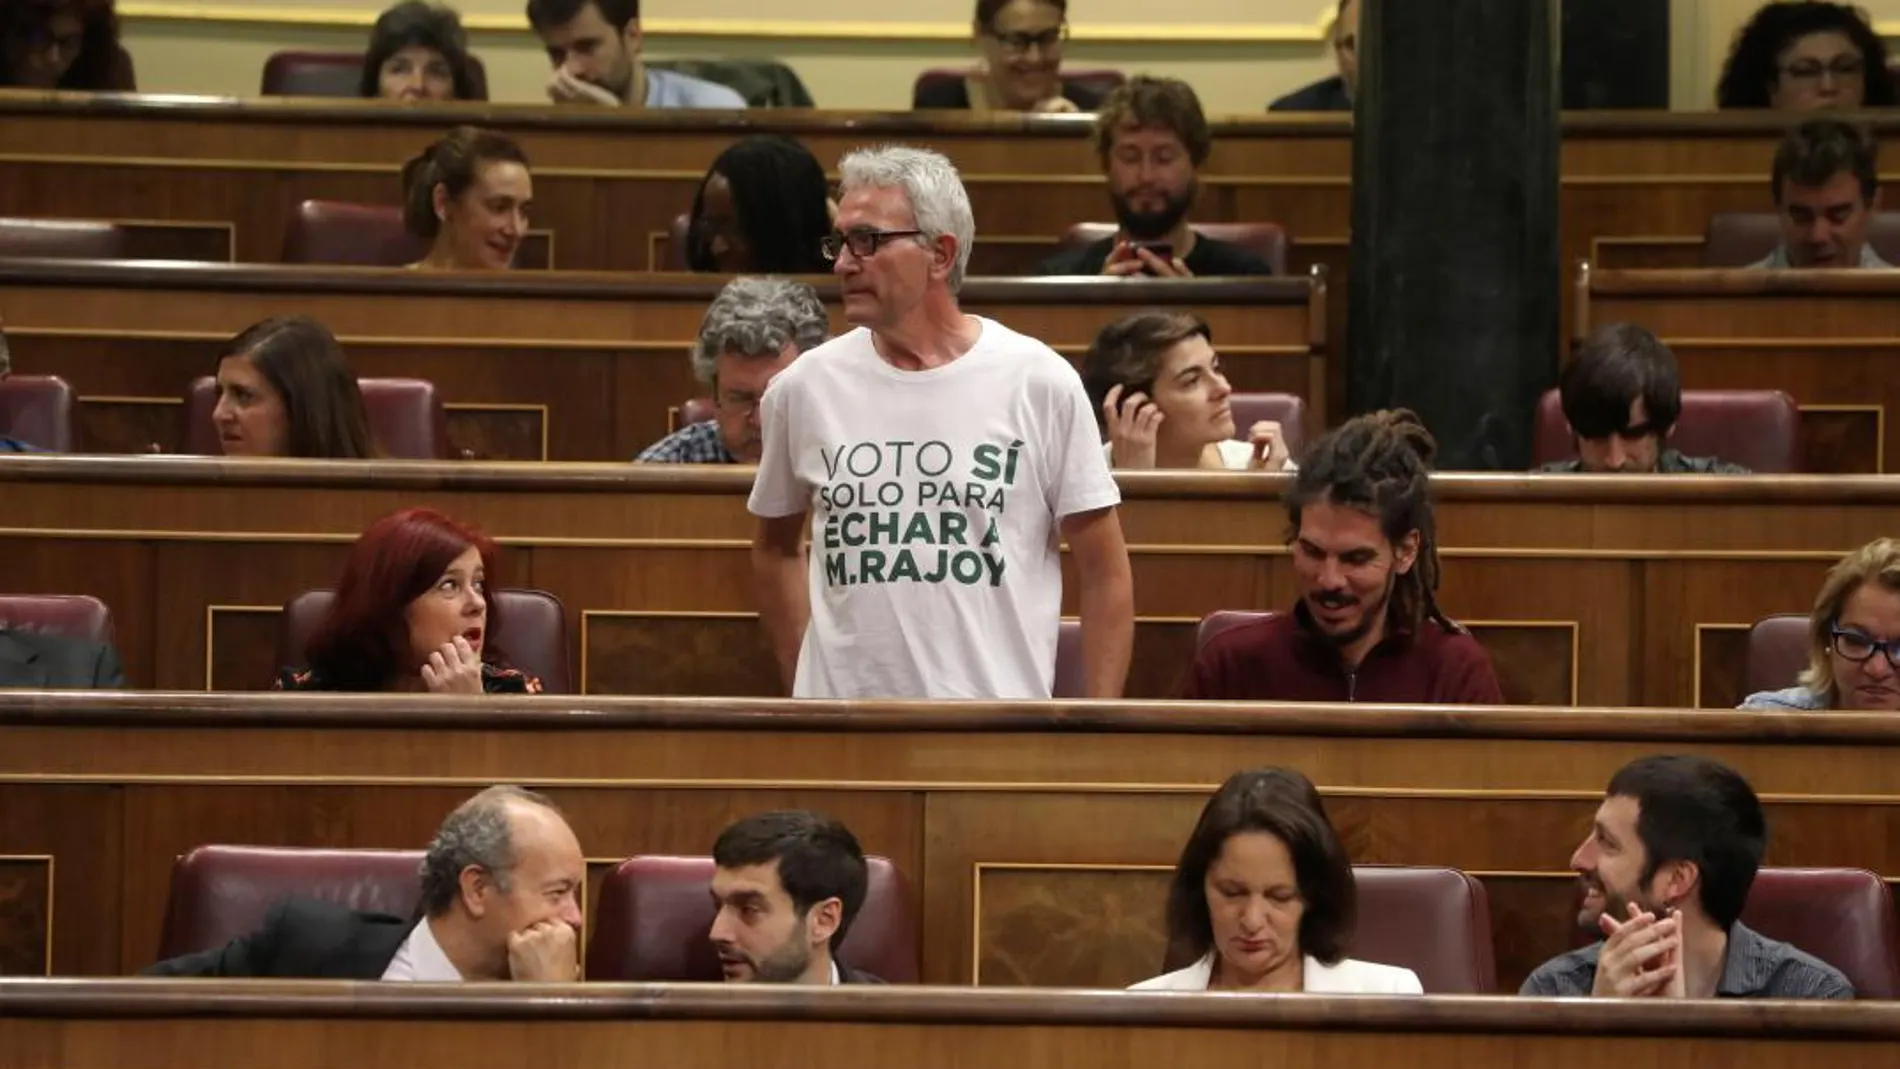 Diego Cañamero, diputado de Podemos, con la serigrafía en su camiseta «voto sí solo para echar a M.Rajoy» / Efe